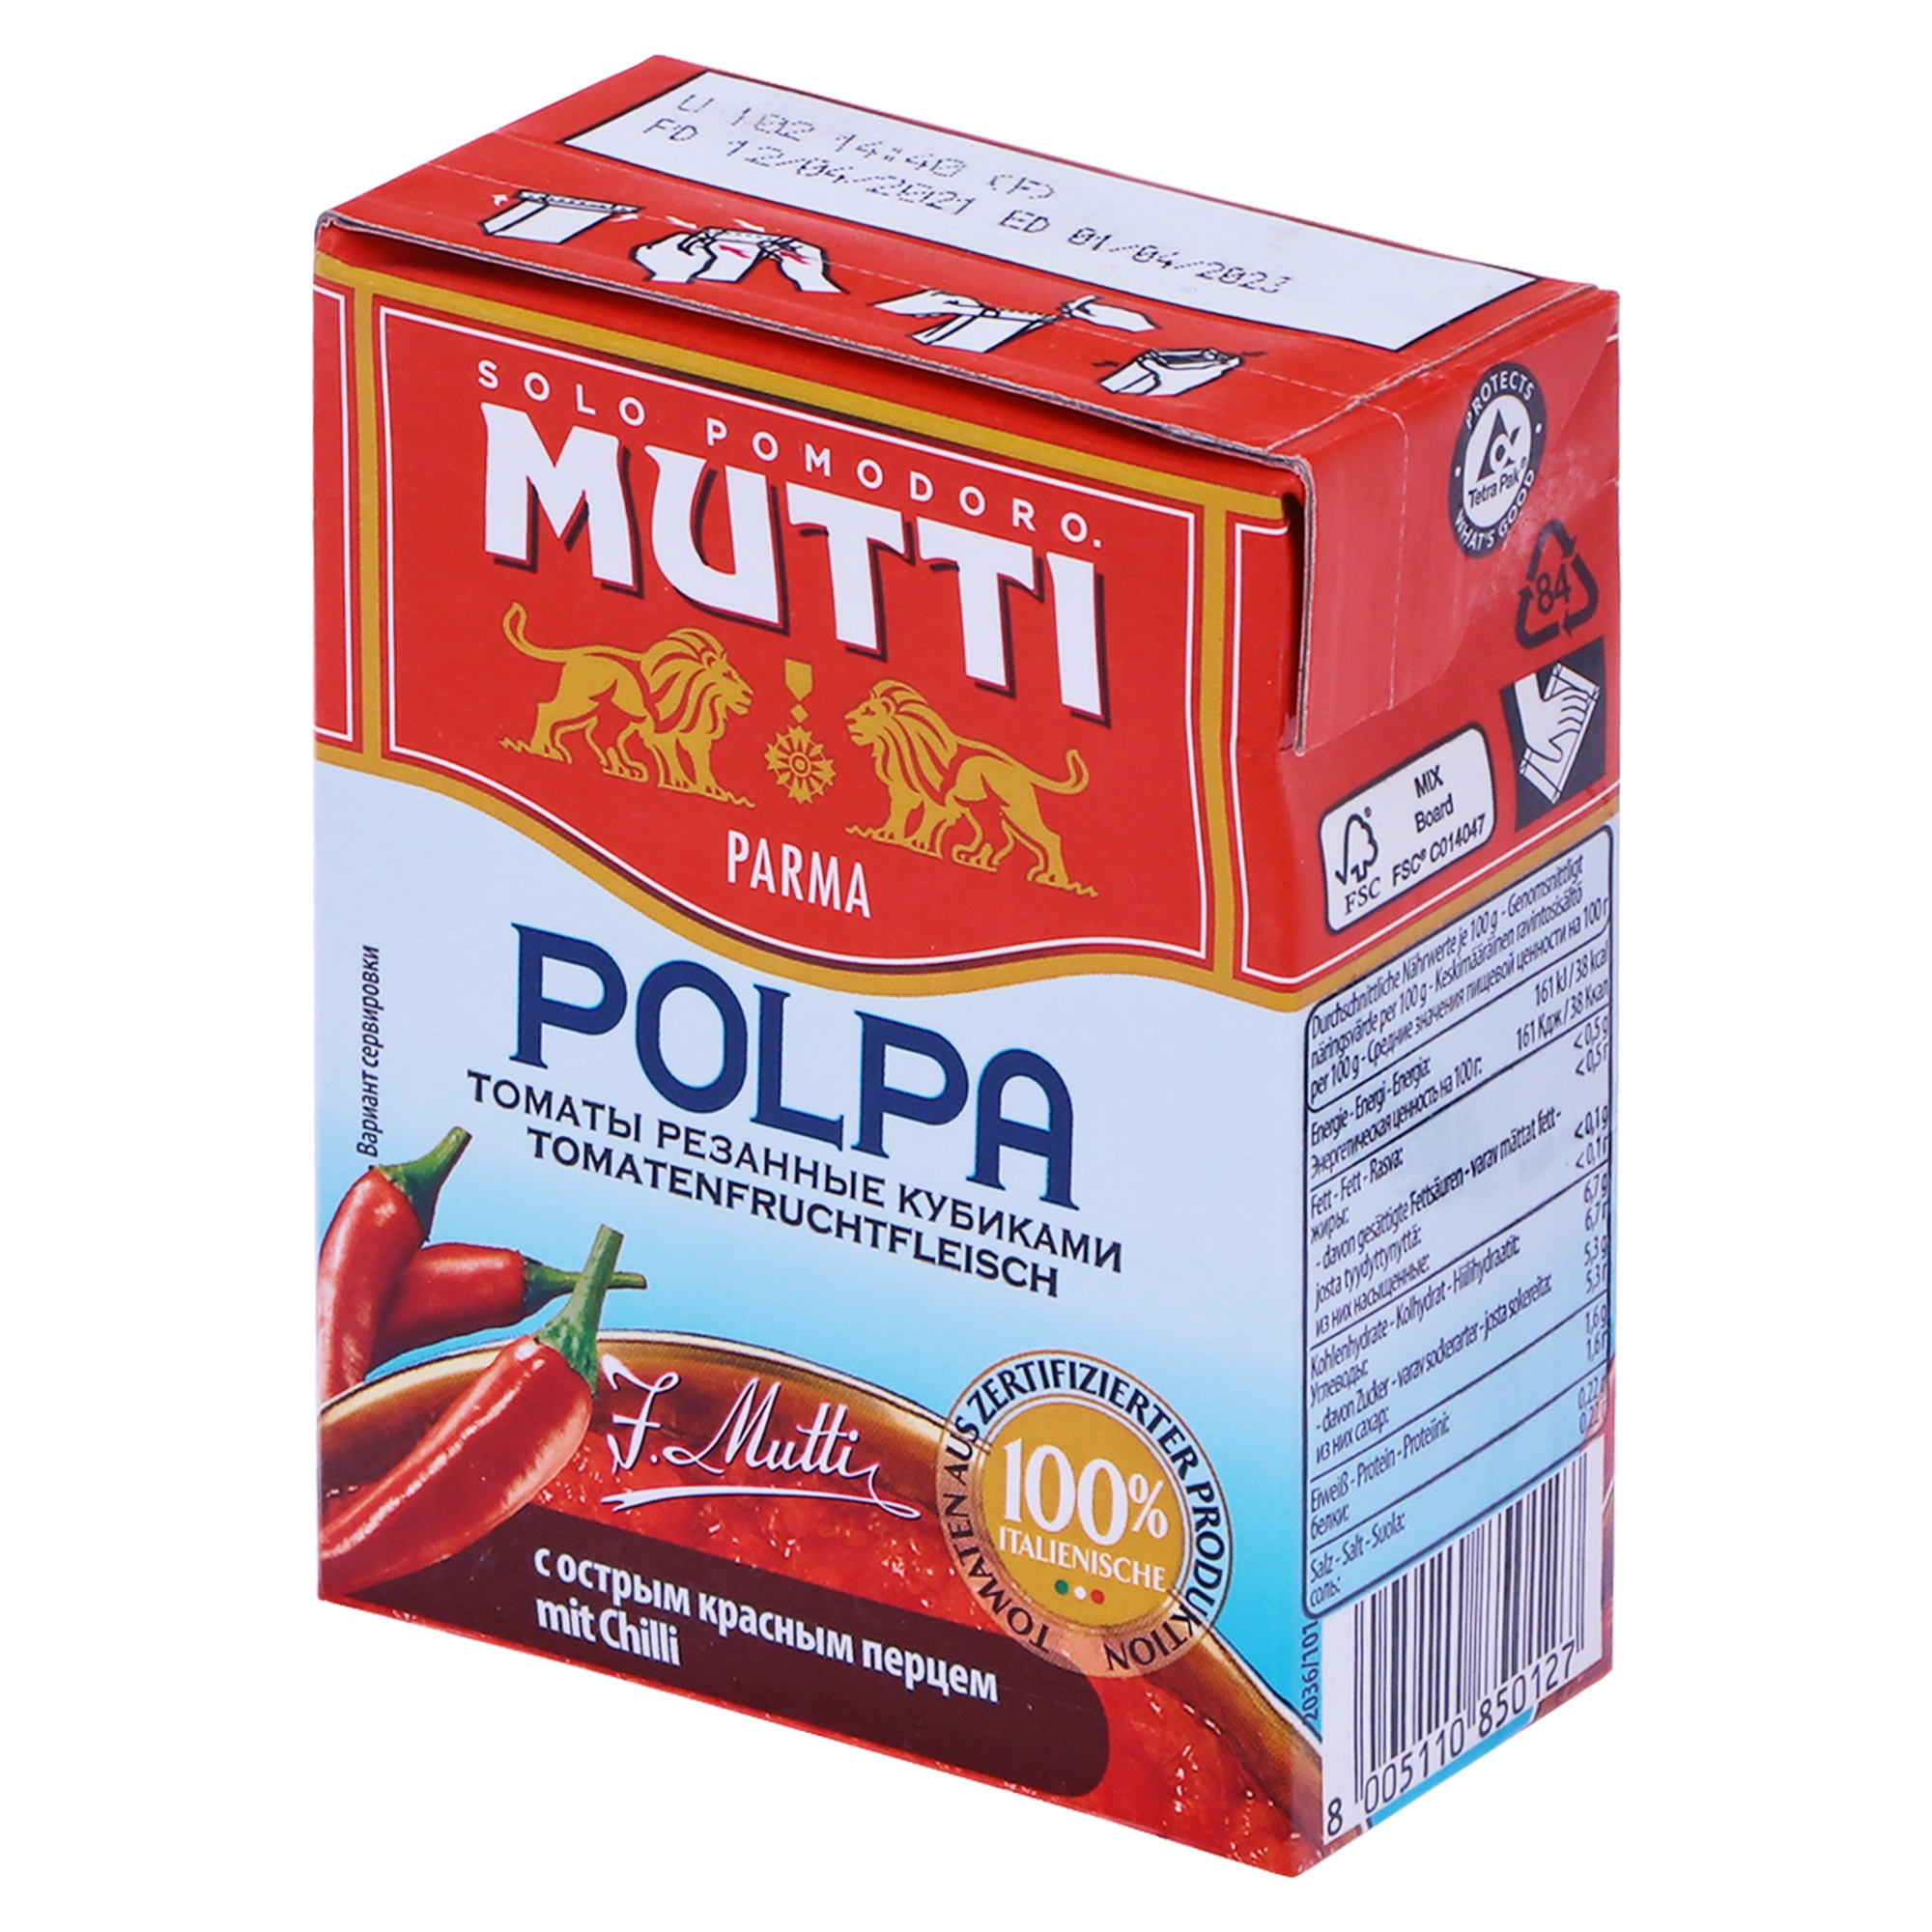 Томаты резаные Mutti с острым перцем 390 г томаты rodolfi очищенные 400 г